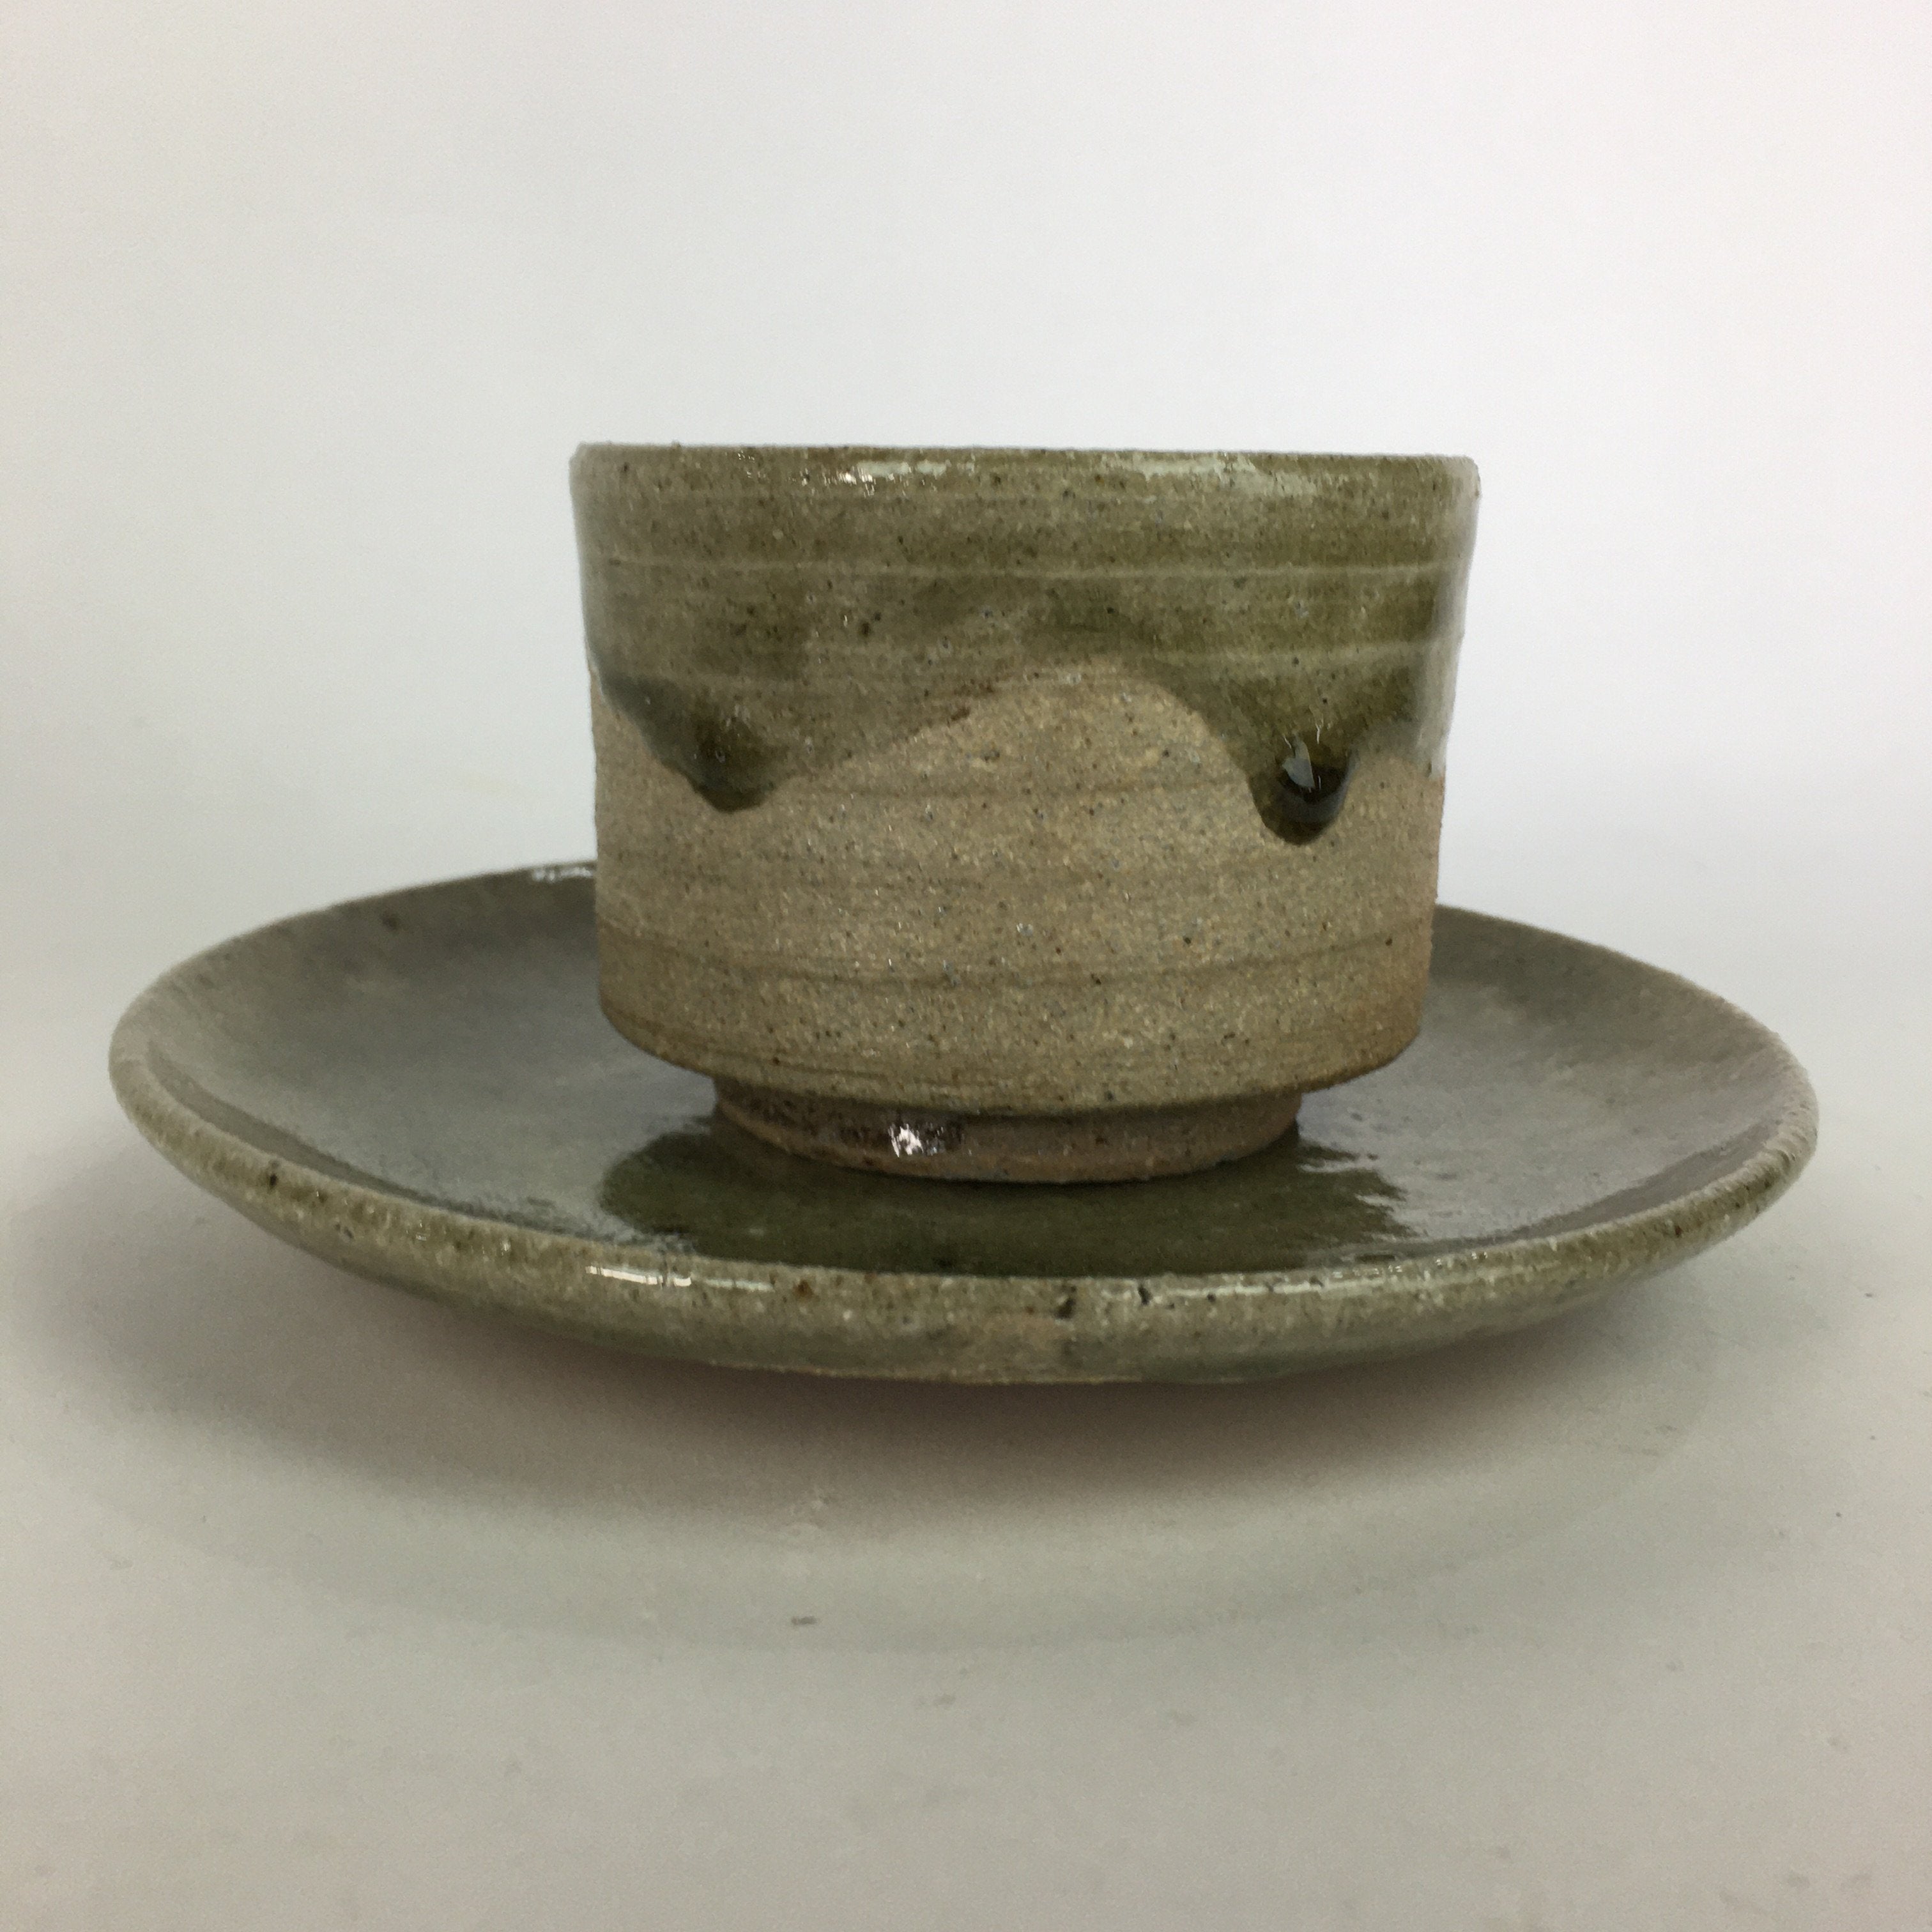 Japanese Ceramic Igayaki Teacup Mug Saucer Vtg Cup Plate Set Green Glaze PP571